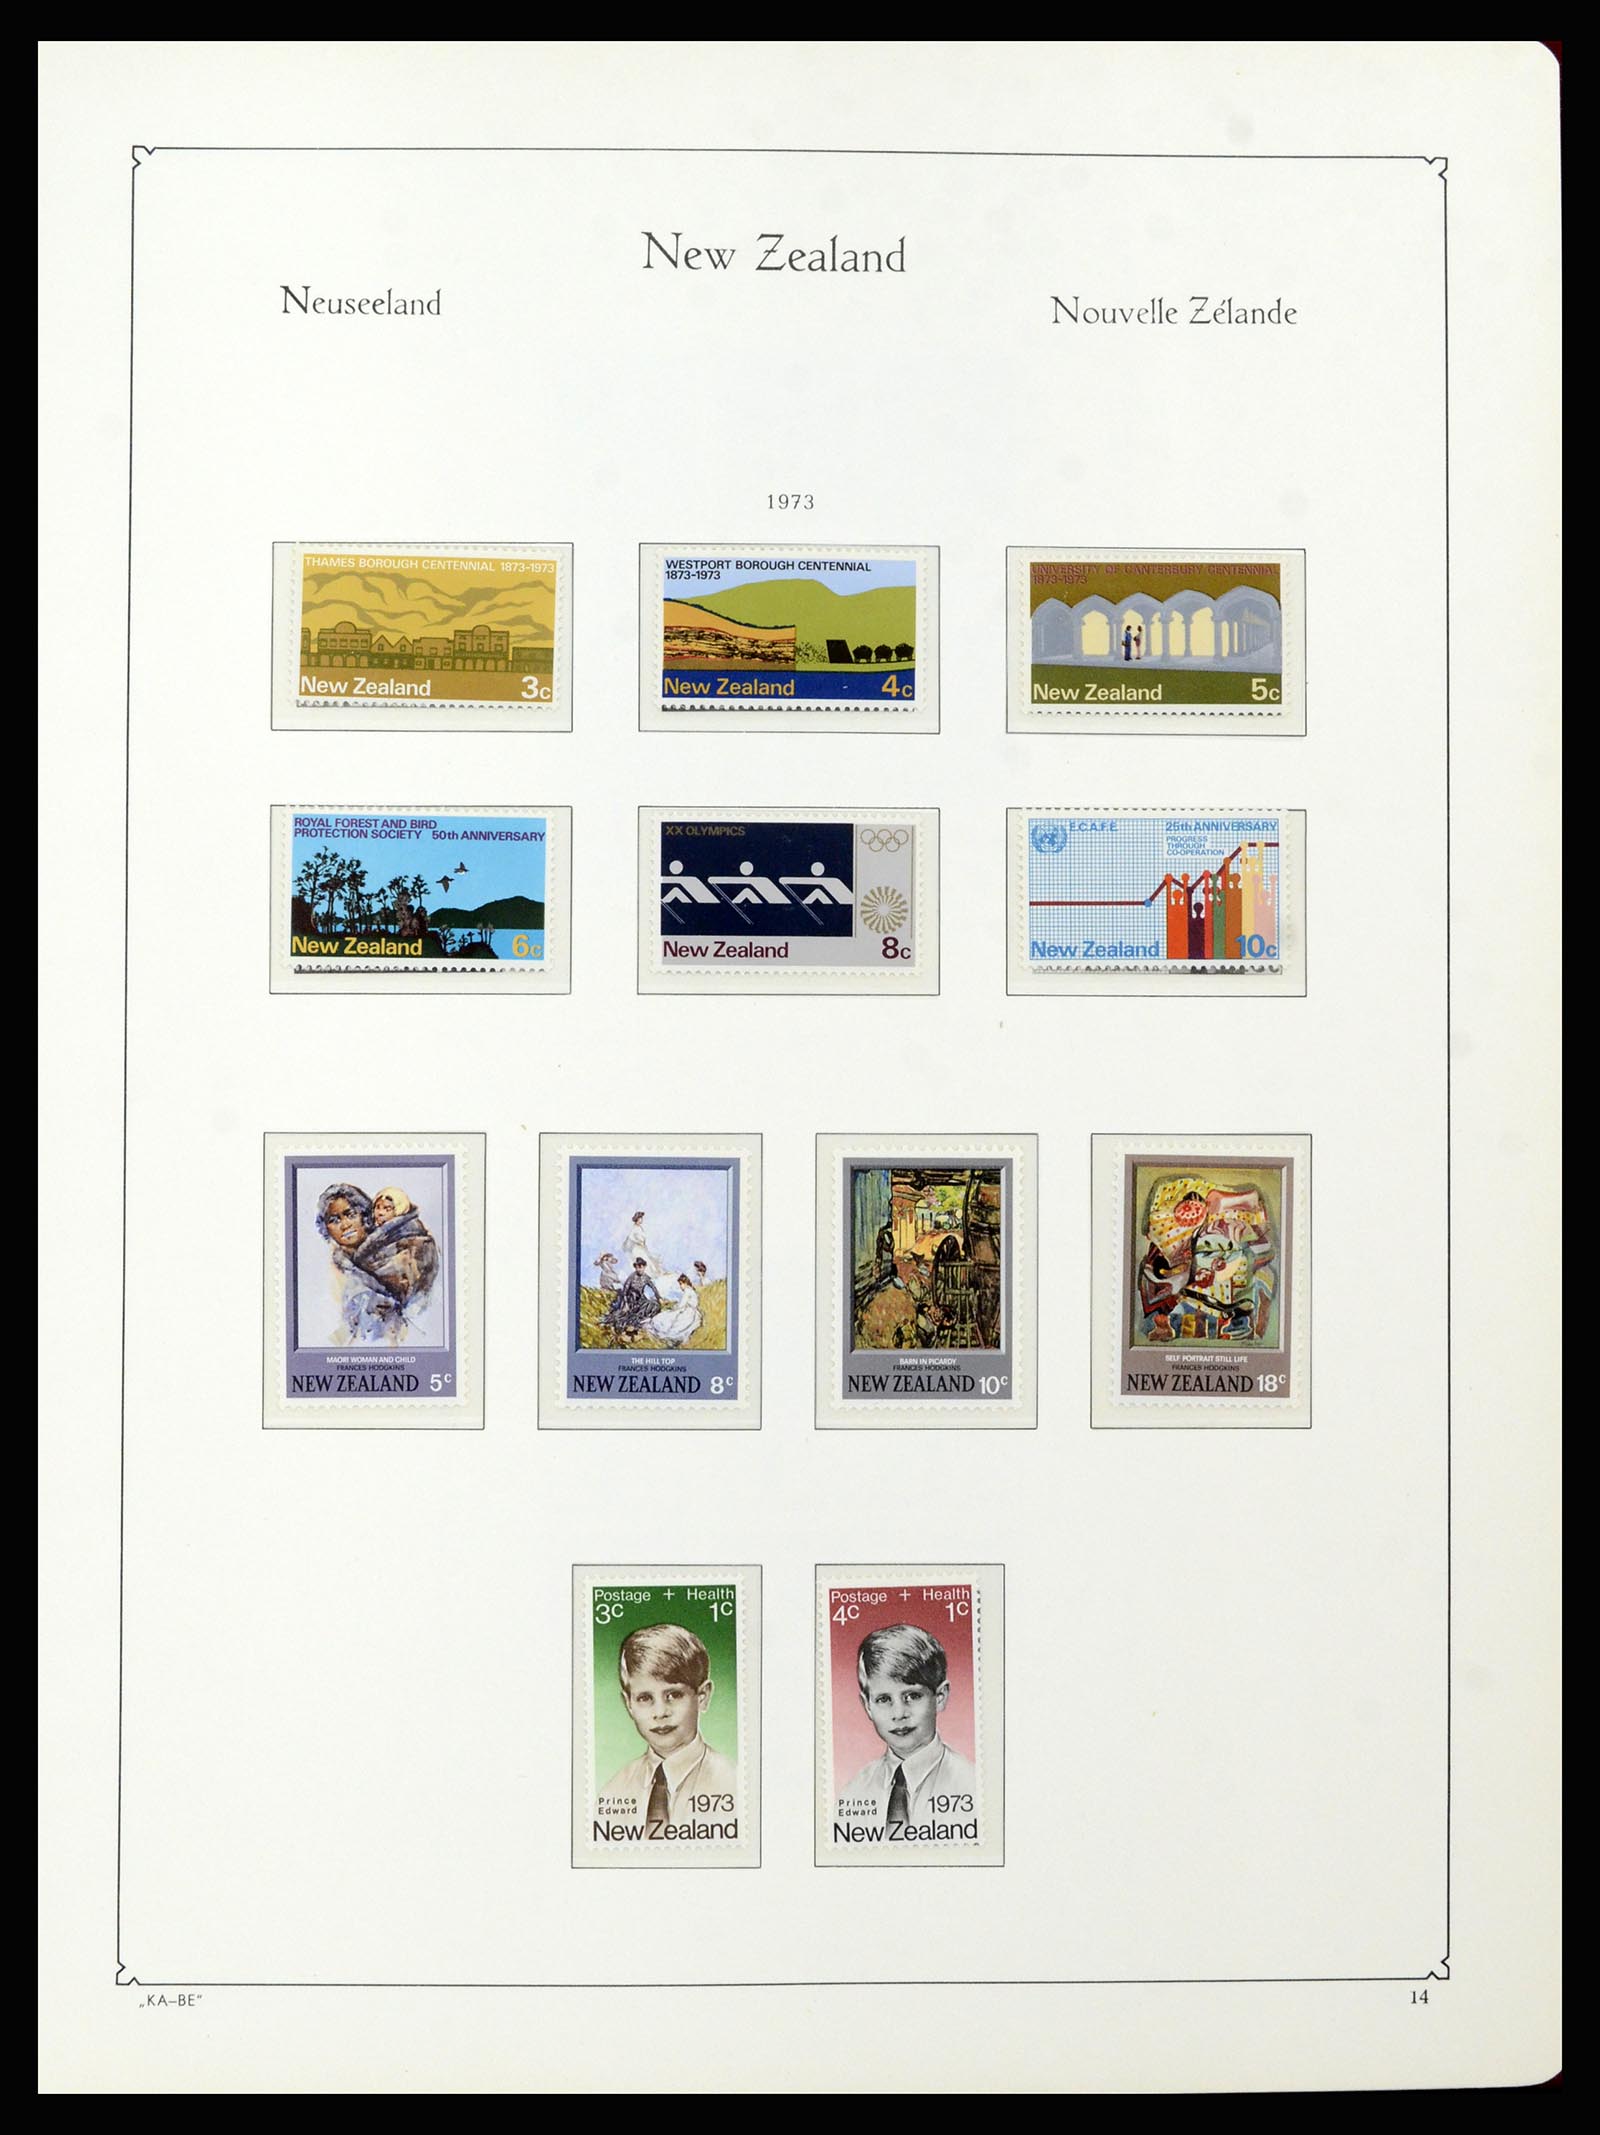 37148 120 - Postzegelverzameling 37148 Nieuw Zeeland speciaal verzameling 1953-19